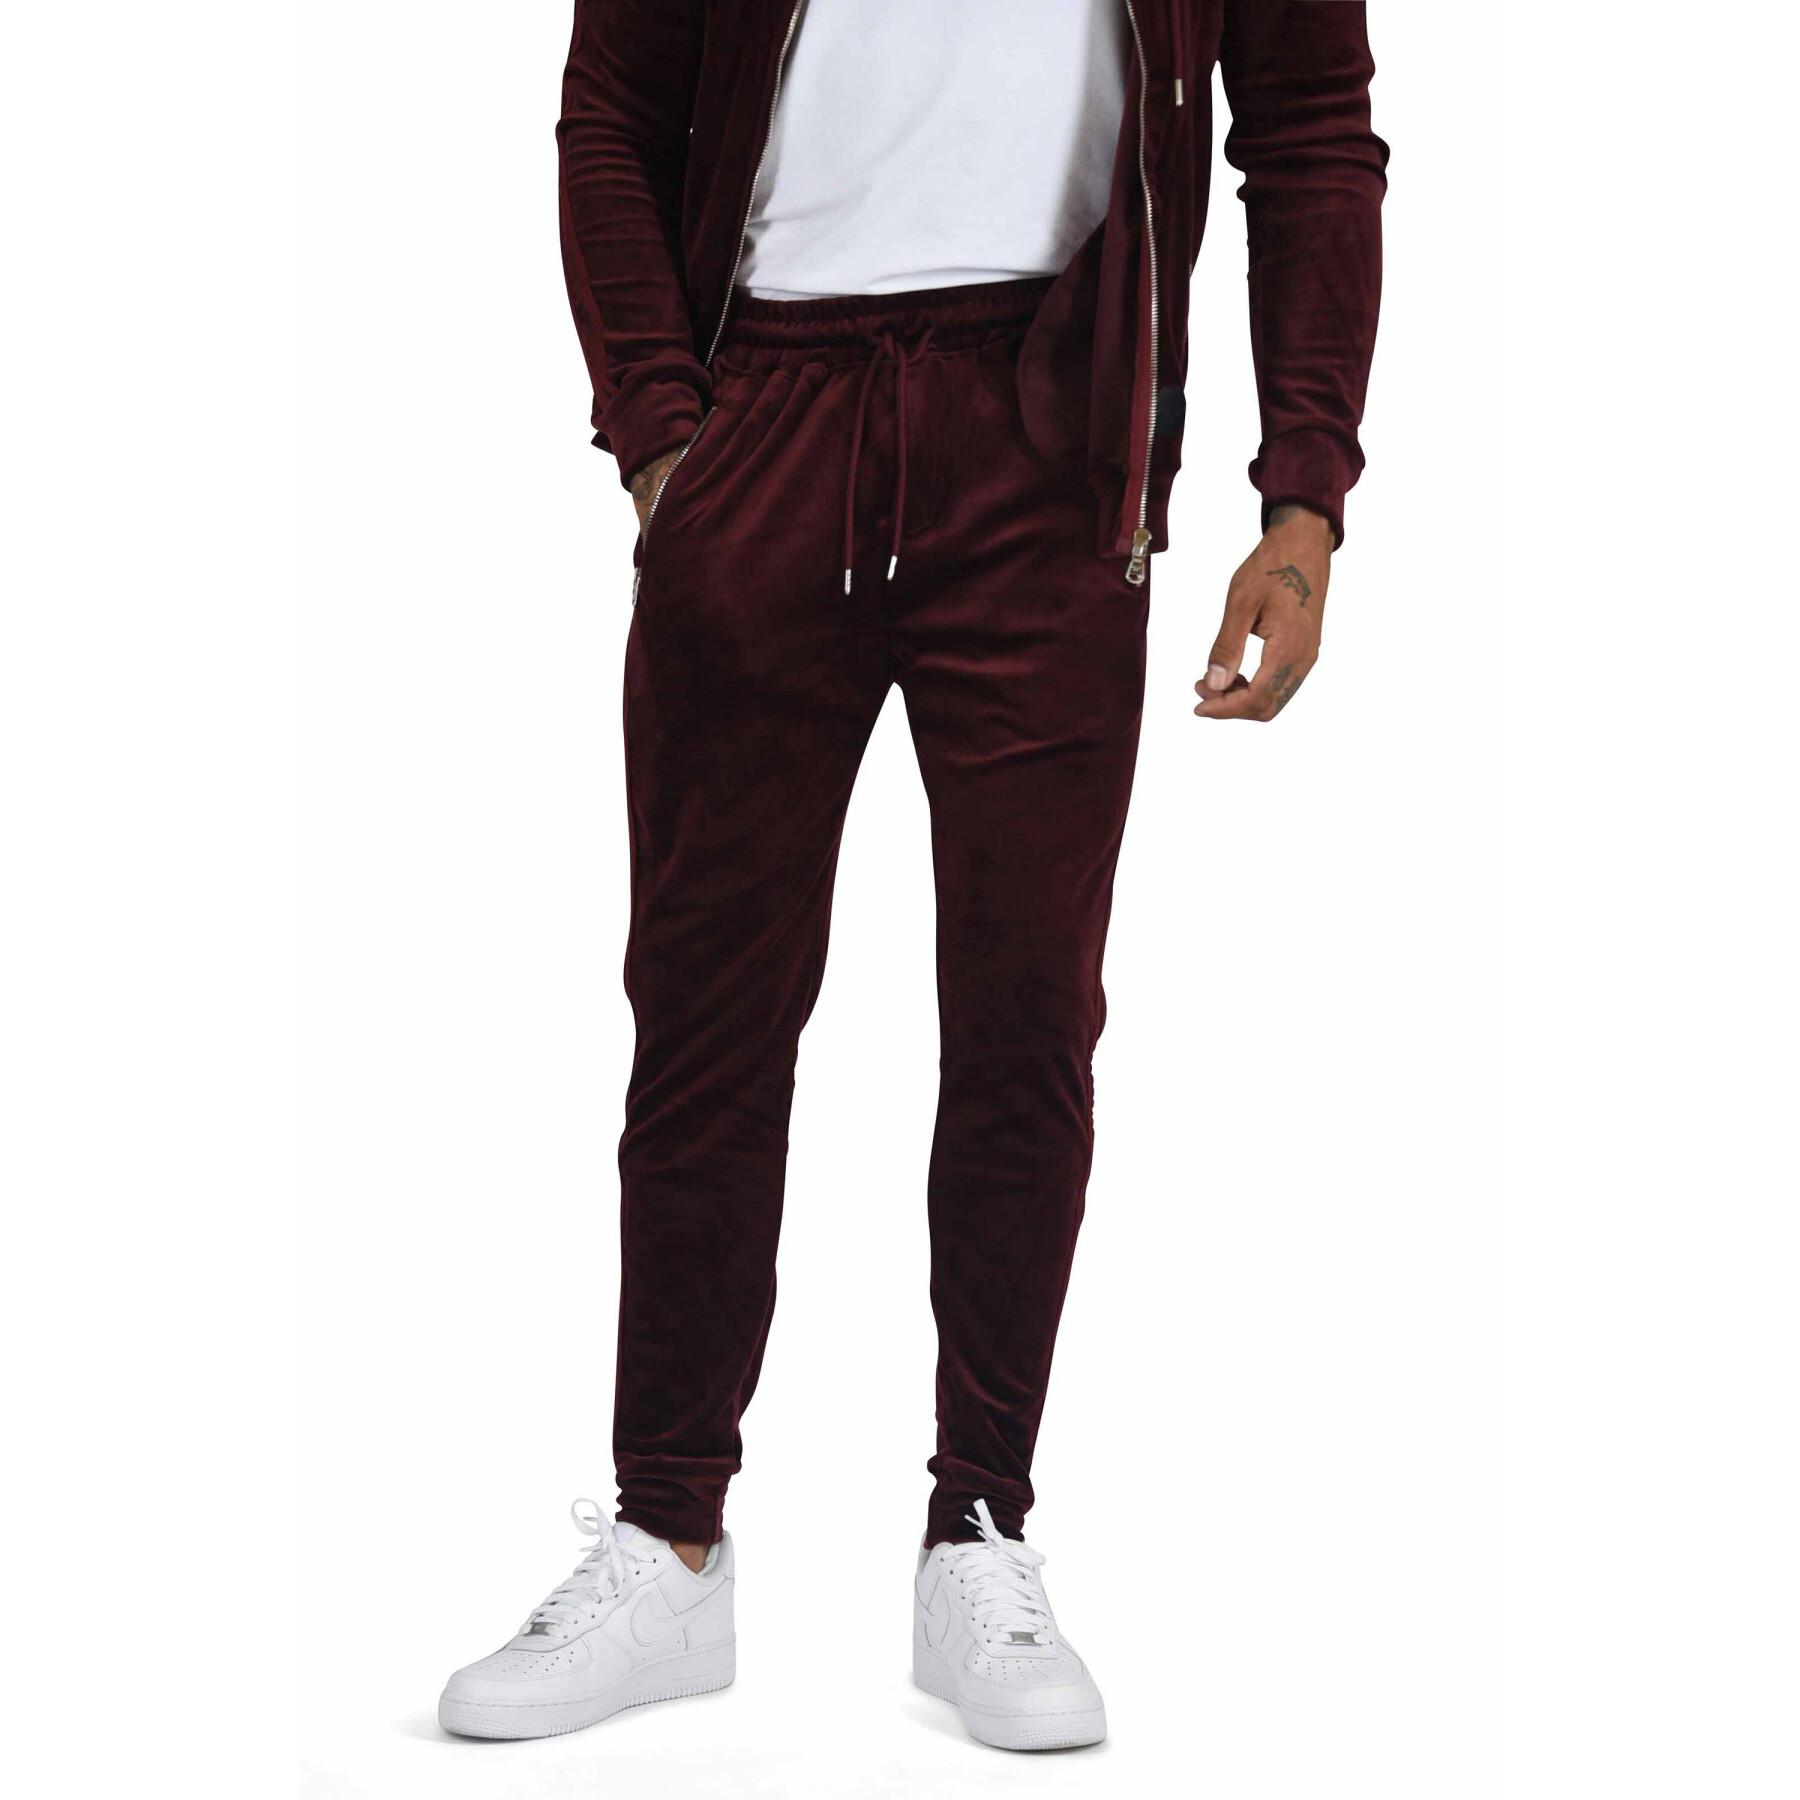 Velvet jogging suit with double stripes on the sides Project X Paris